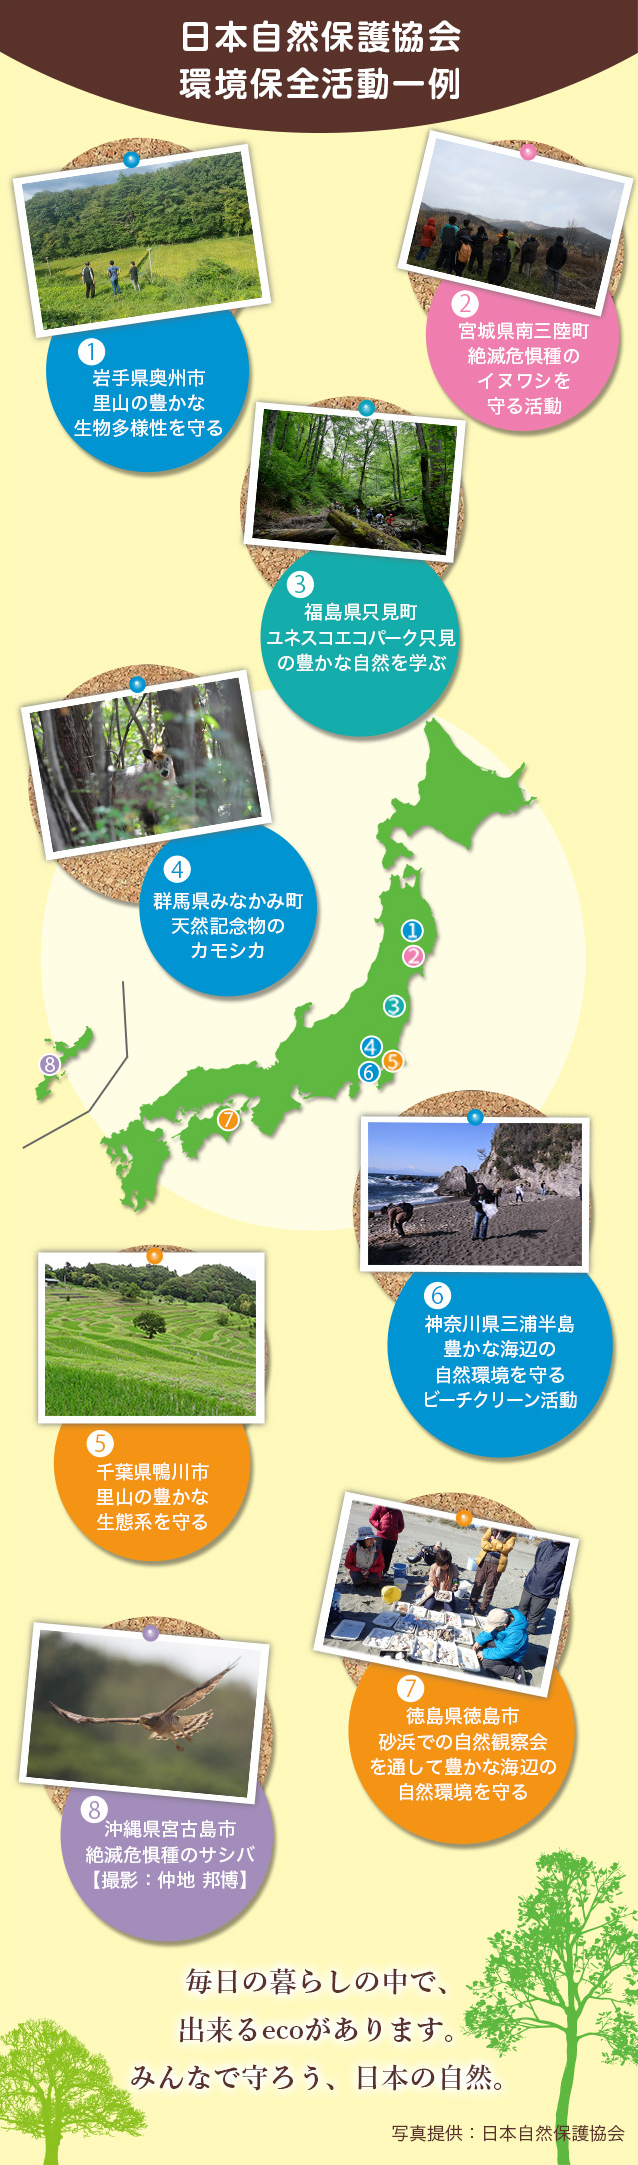 日本自然保護協会環境保全活動一例 毎日の暮らしの中で、できるecoがあります。みんなで守ろう、日本の自然。